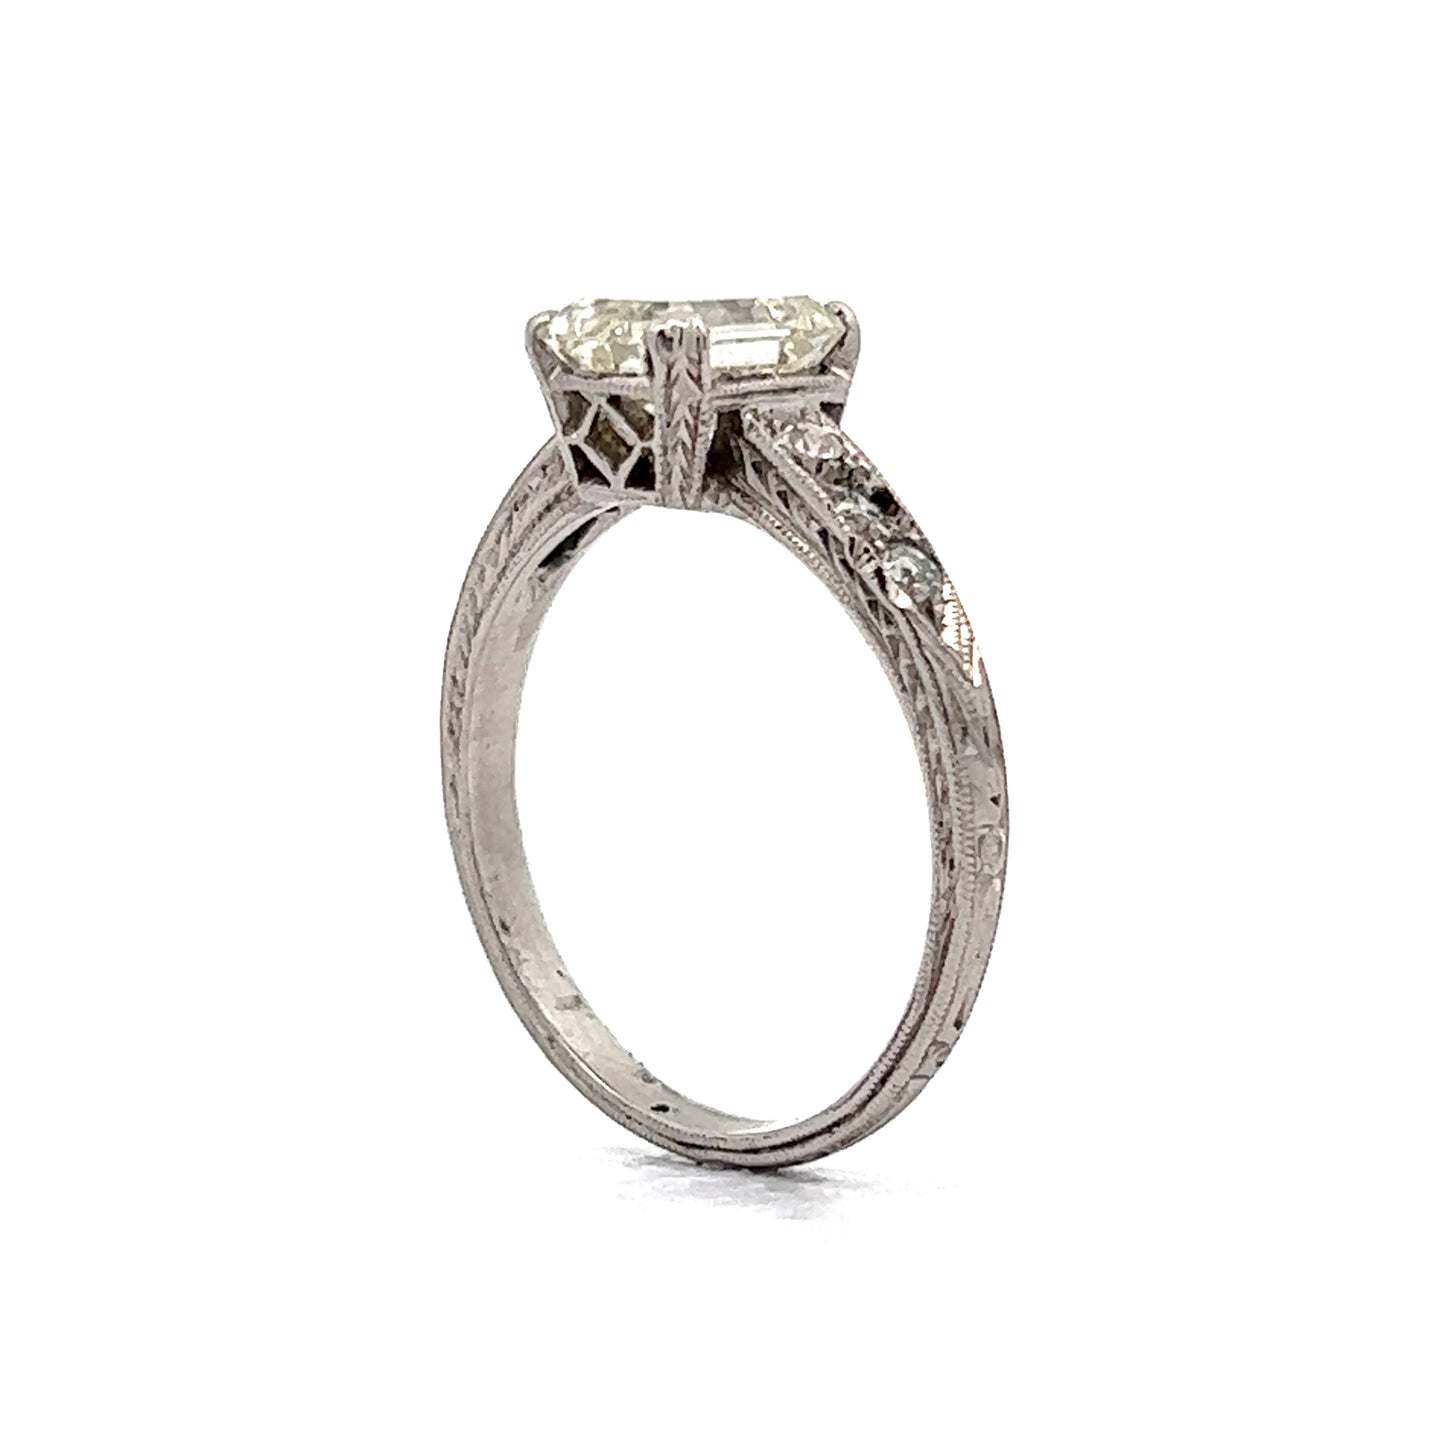 2.07 Vintage Art Deco Emerald Cut Diamond Engagement Ring in Platinum